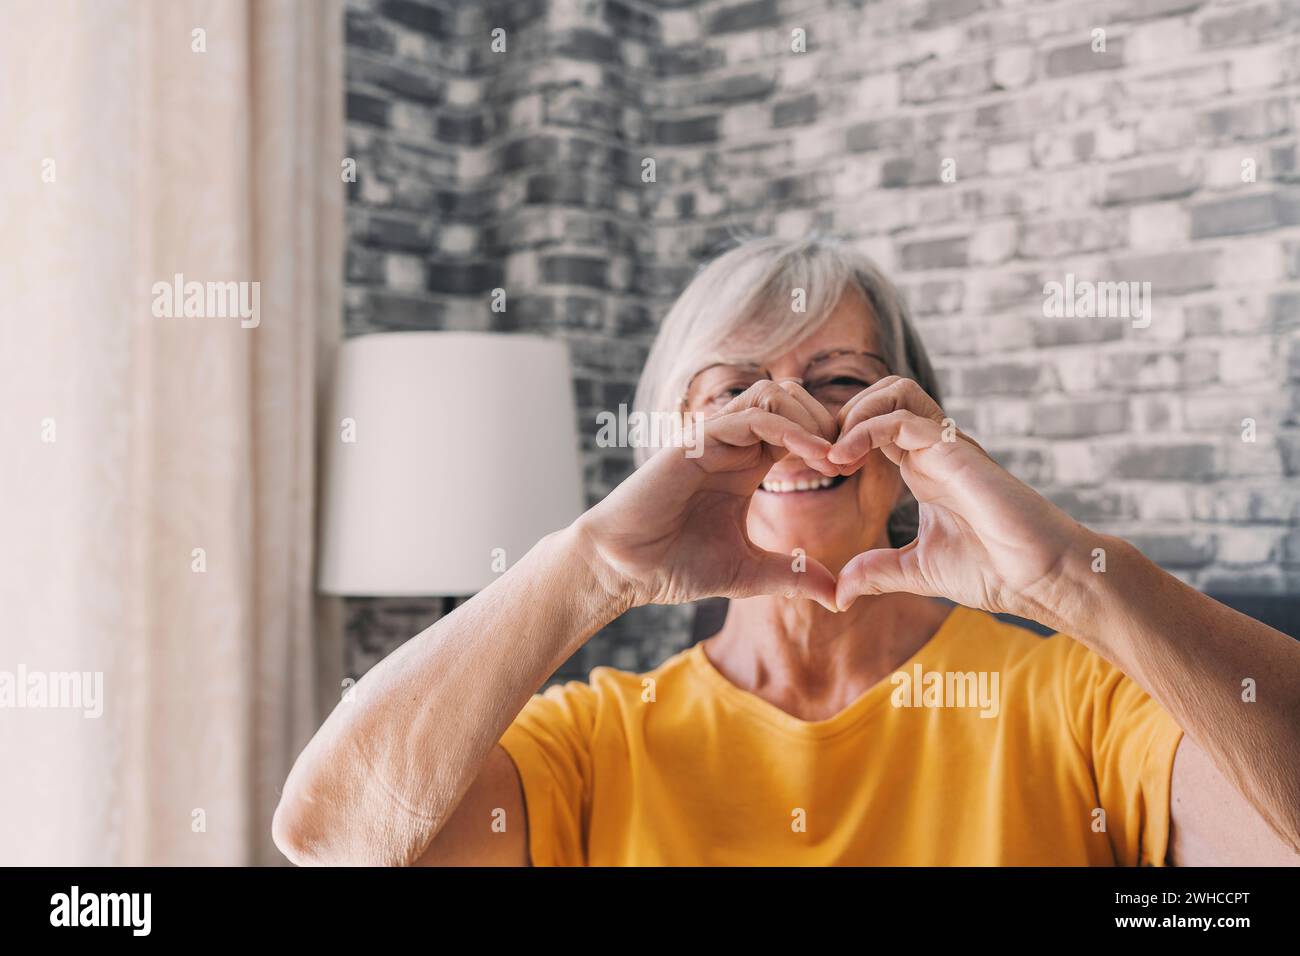 La mujer mayor se sienta en la sala de estar con los dedos conectados que muestran el símbolo del corazón de cerca, tratamiento de prevención de enfermedades cardiovasculares de las personas mayores, revisión de la salud, vitaminas cardiovasculares, signo de bondad y caridad Foto de stock